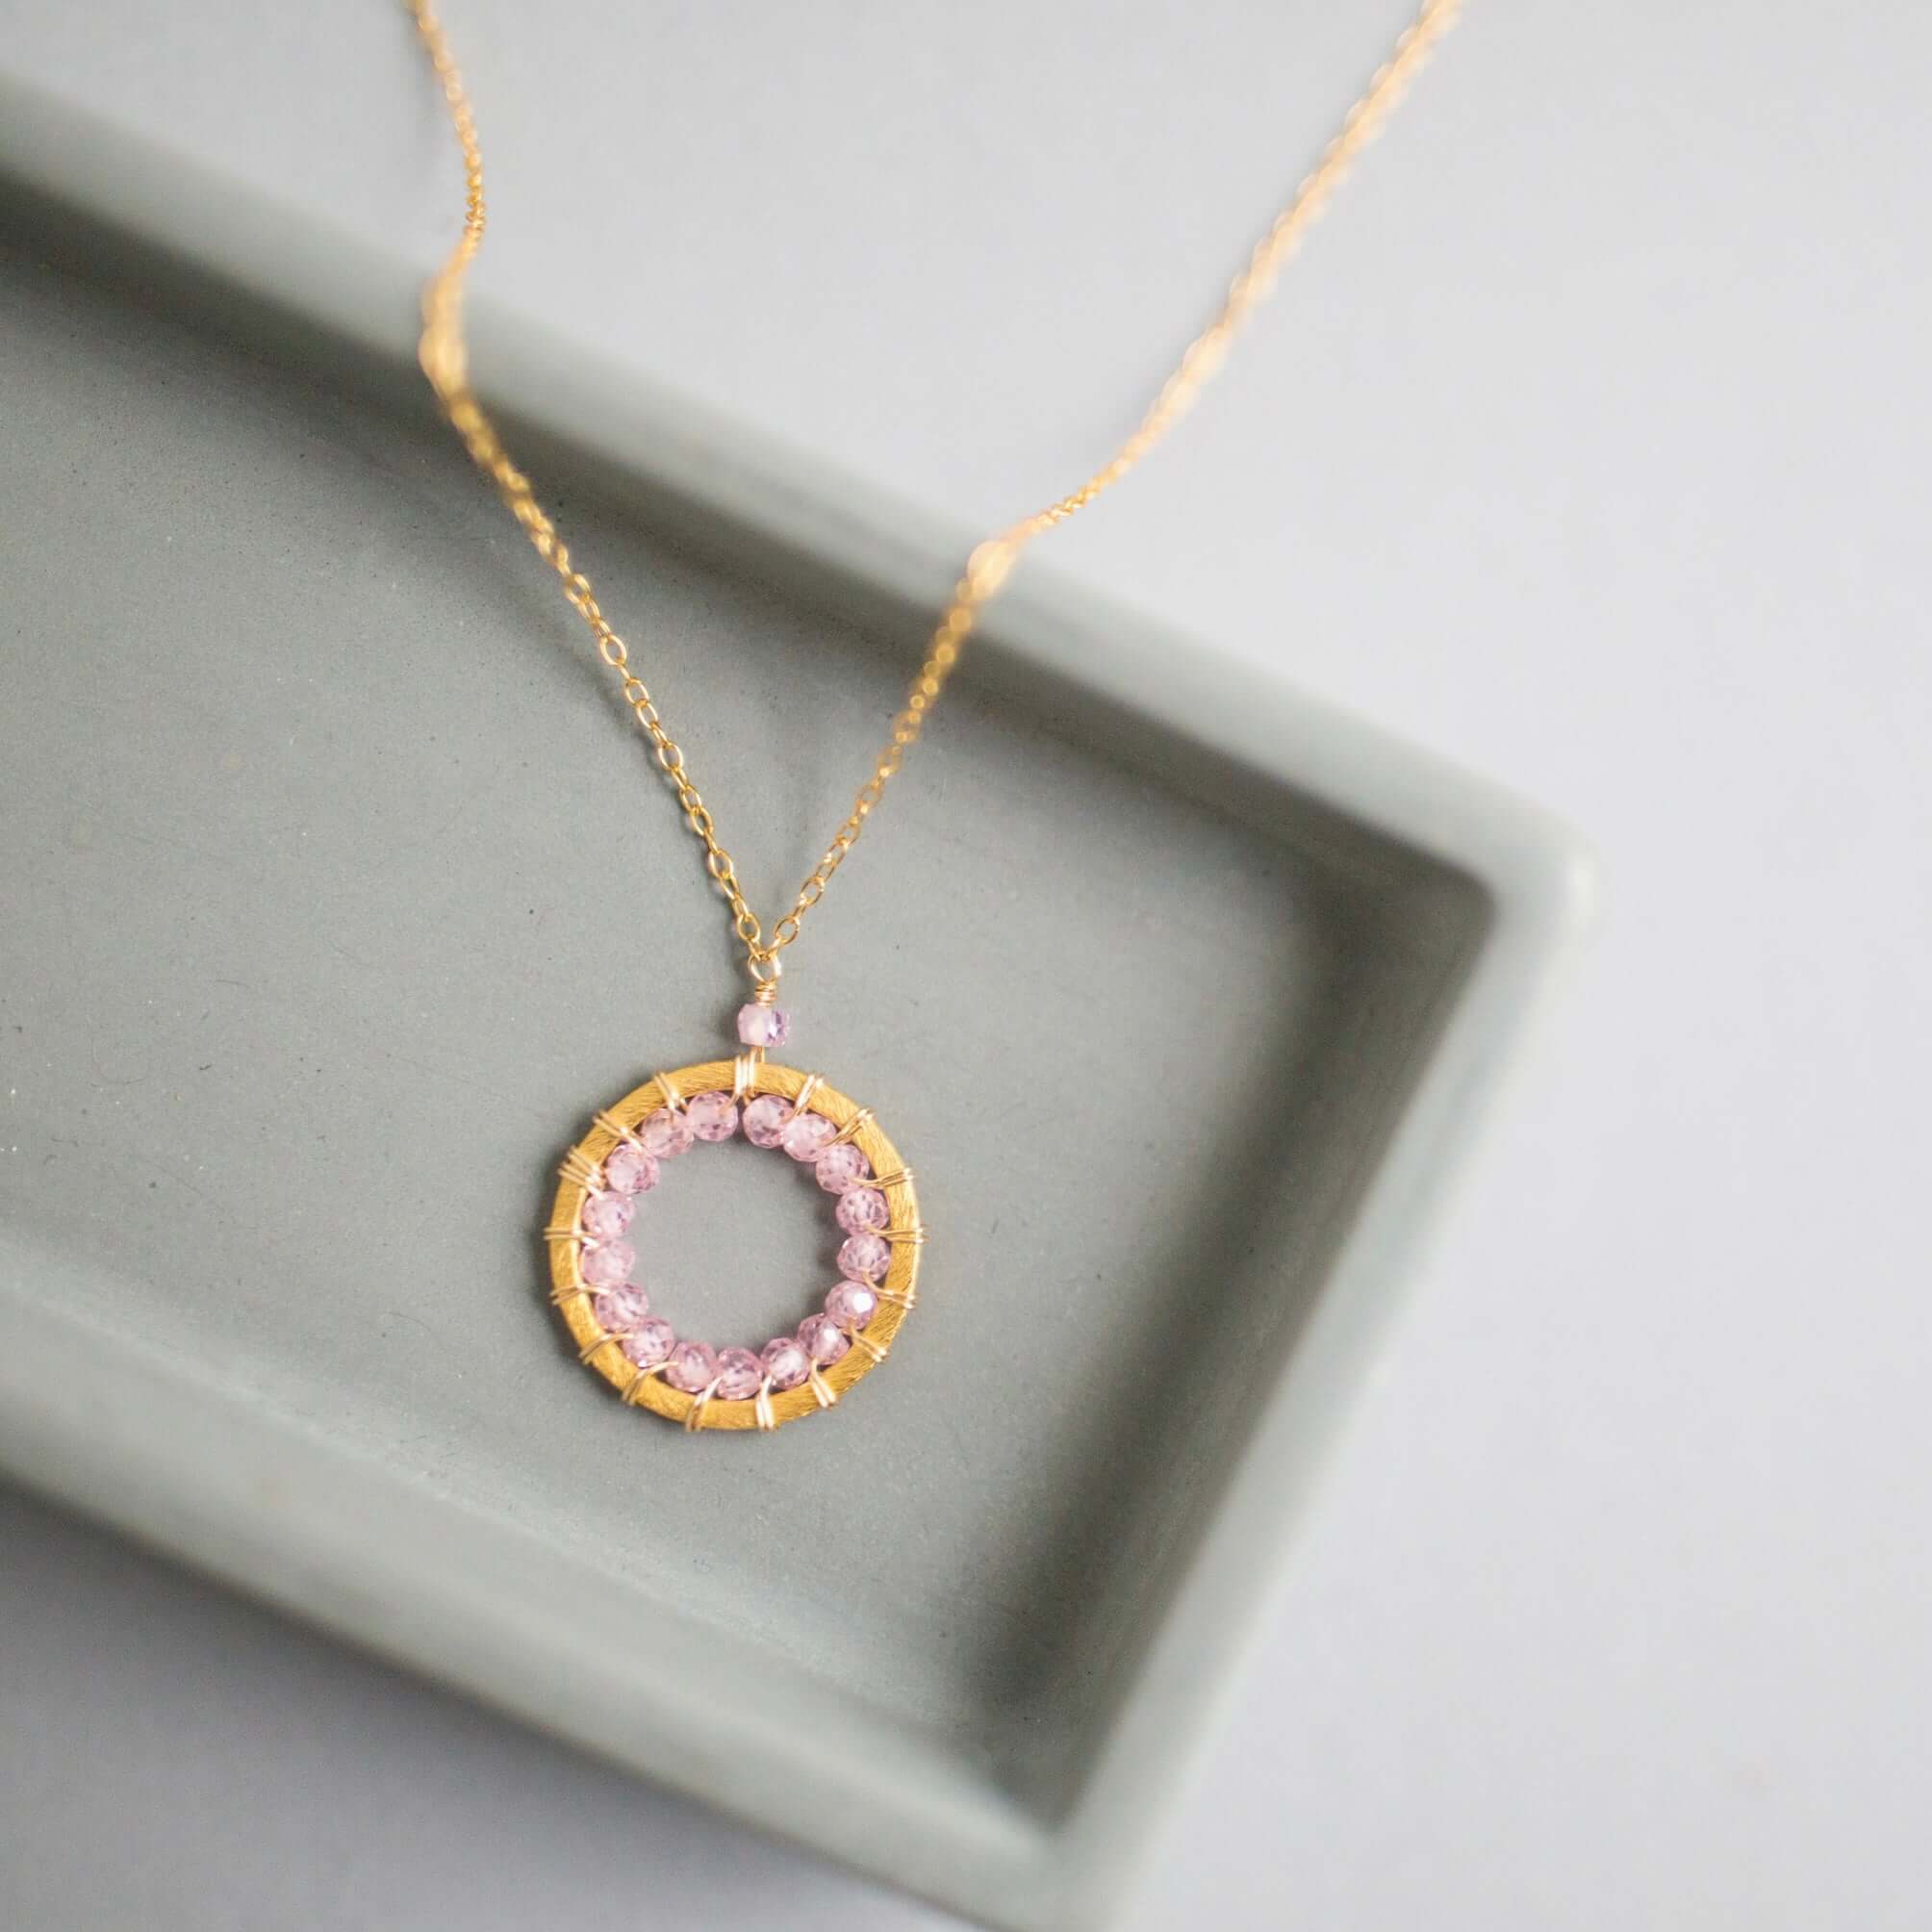 Mini Gold Circle Necklace with Unique Rose Quartz Gemstones Detail.